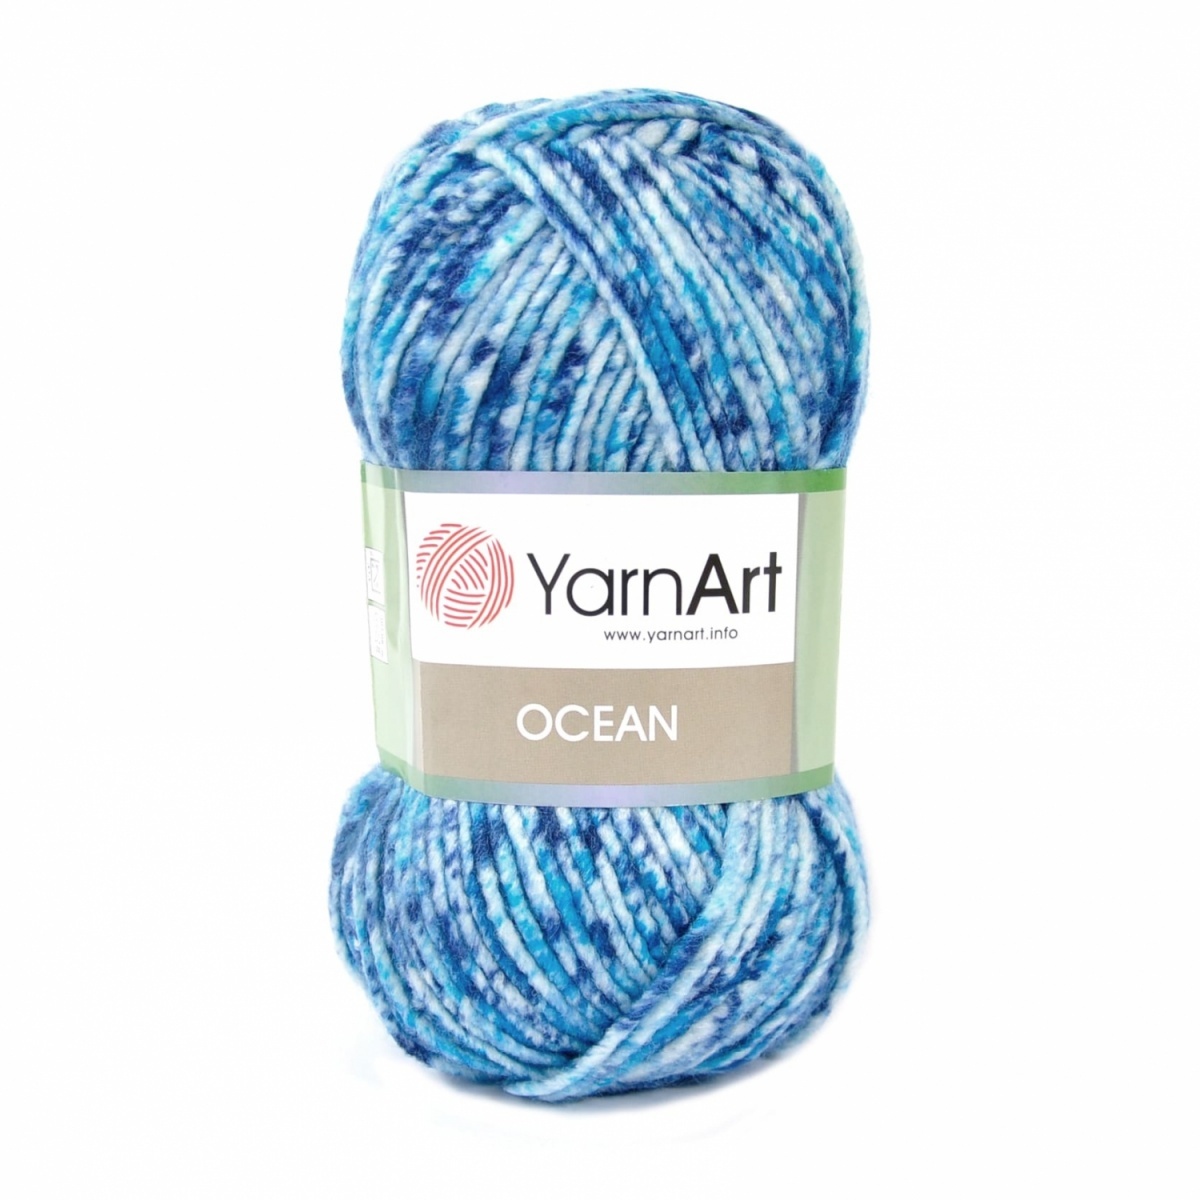 YarnArt Ocean 20% Wool, 80% Acrylic, 5 Skein Value Pack, 500g фото 1